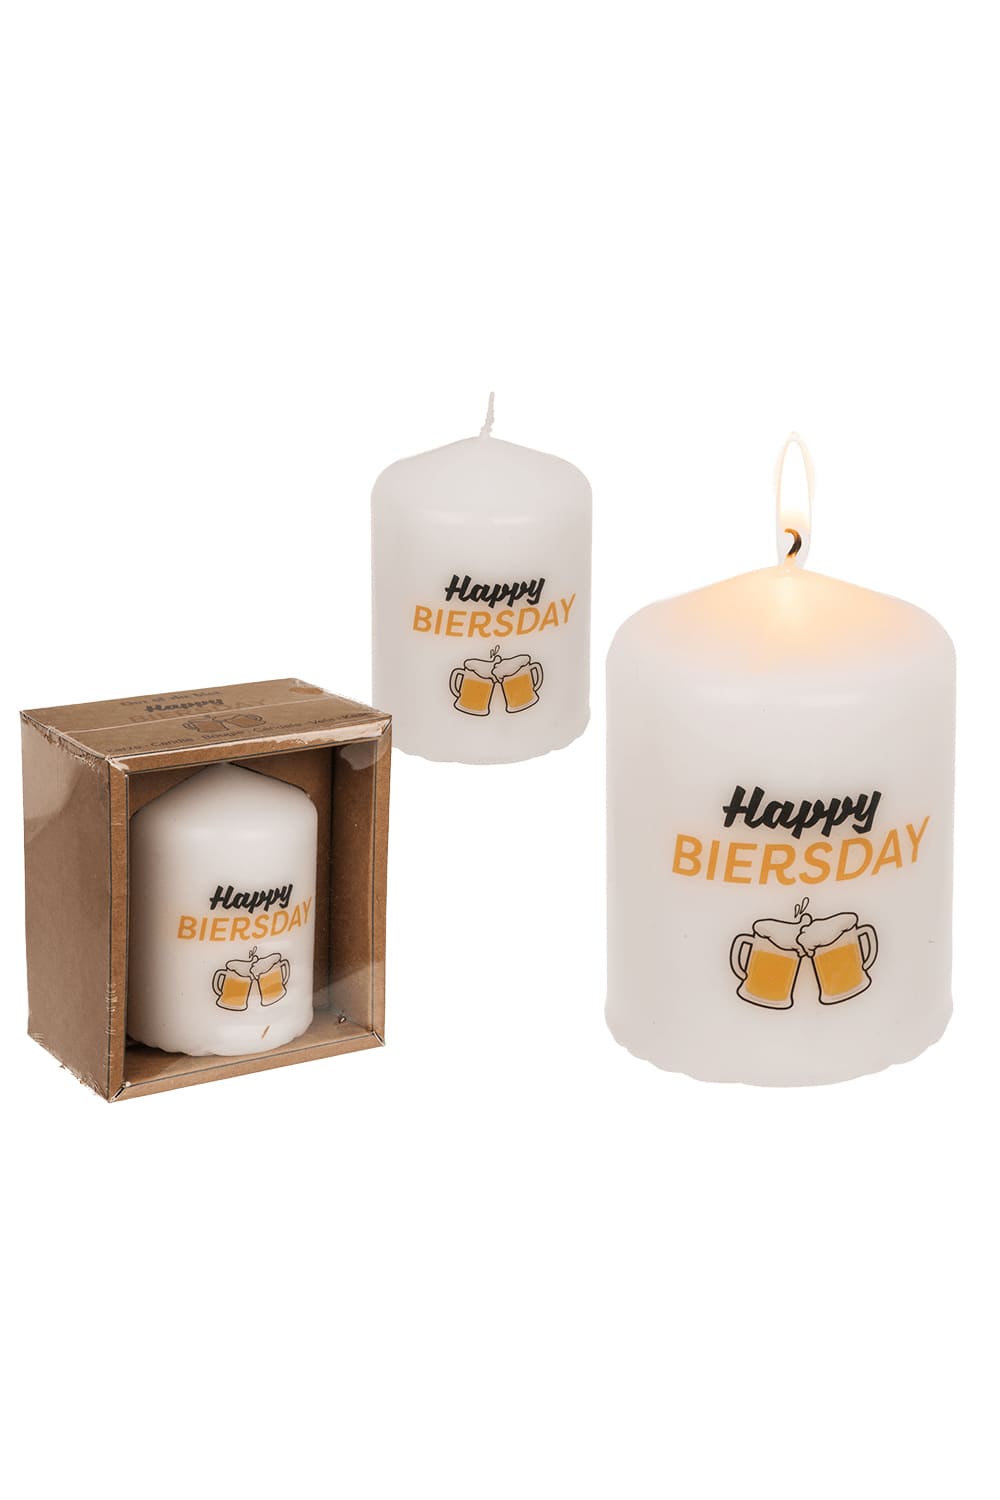 Diese Spruchkerze ist eine perfektes Geschenk! Auf der Kerze befindet sich der Spruch: Happy Biersday und ein Bier Bild. Der witzige Spruch, gibt dieser Stumpenkerze noch den speziellen Feinschliff. Perfektes Geschenk zum Geburtstag und für Bierliebhaber! 